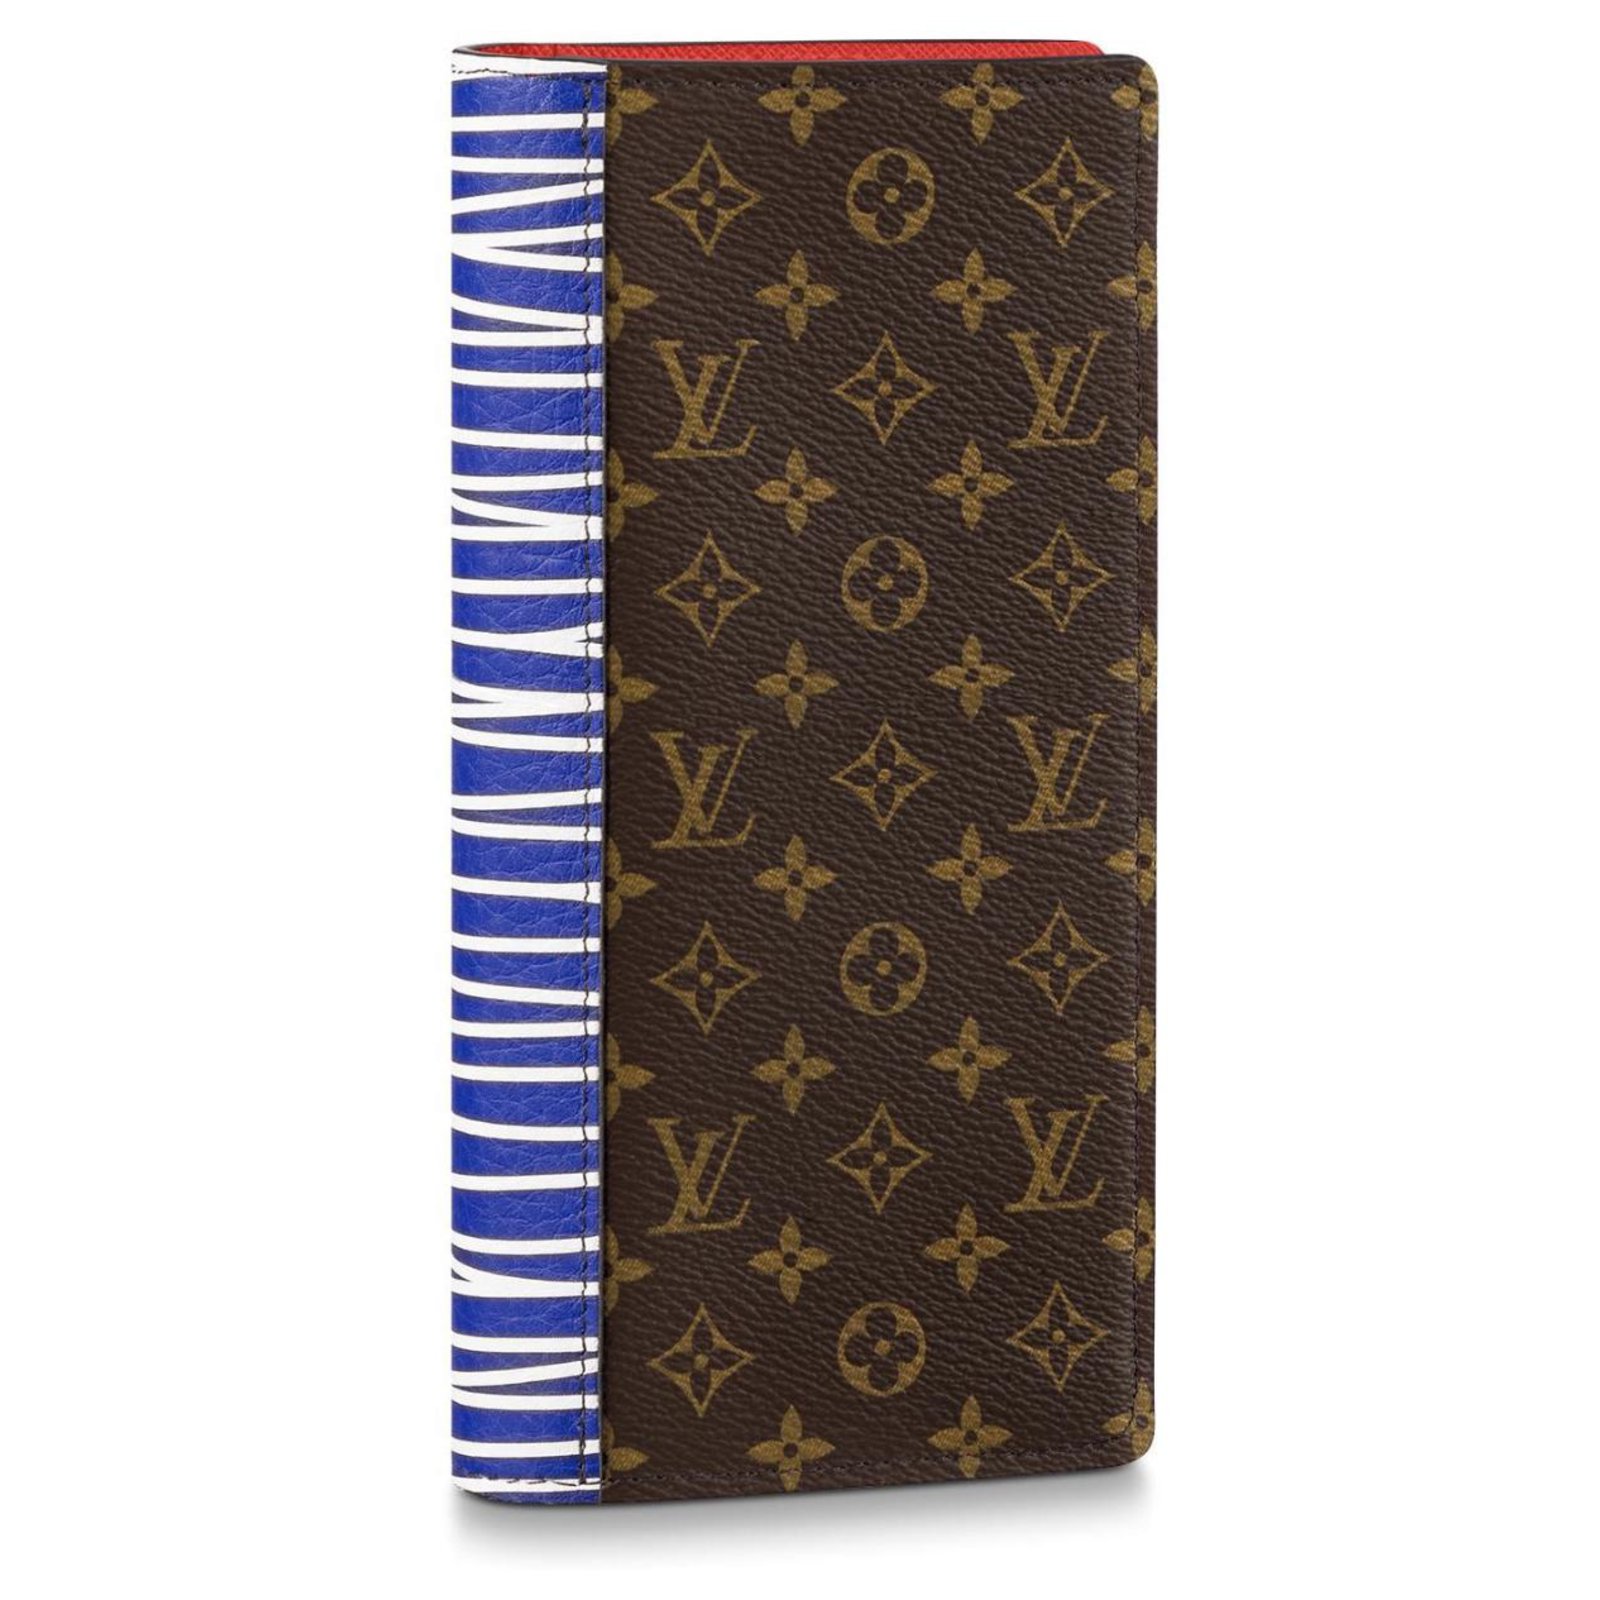 Louis Vuitton lv multiple short wallet